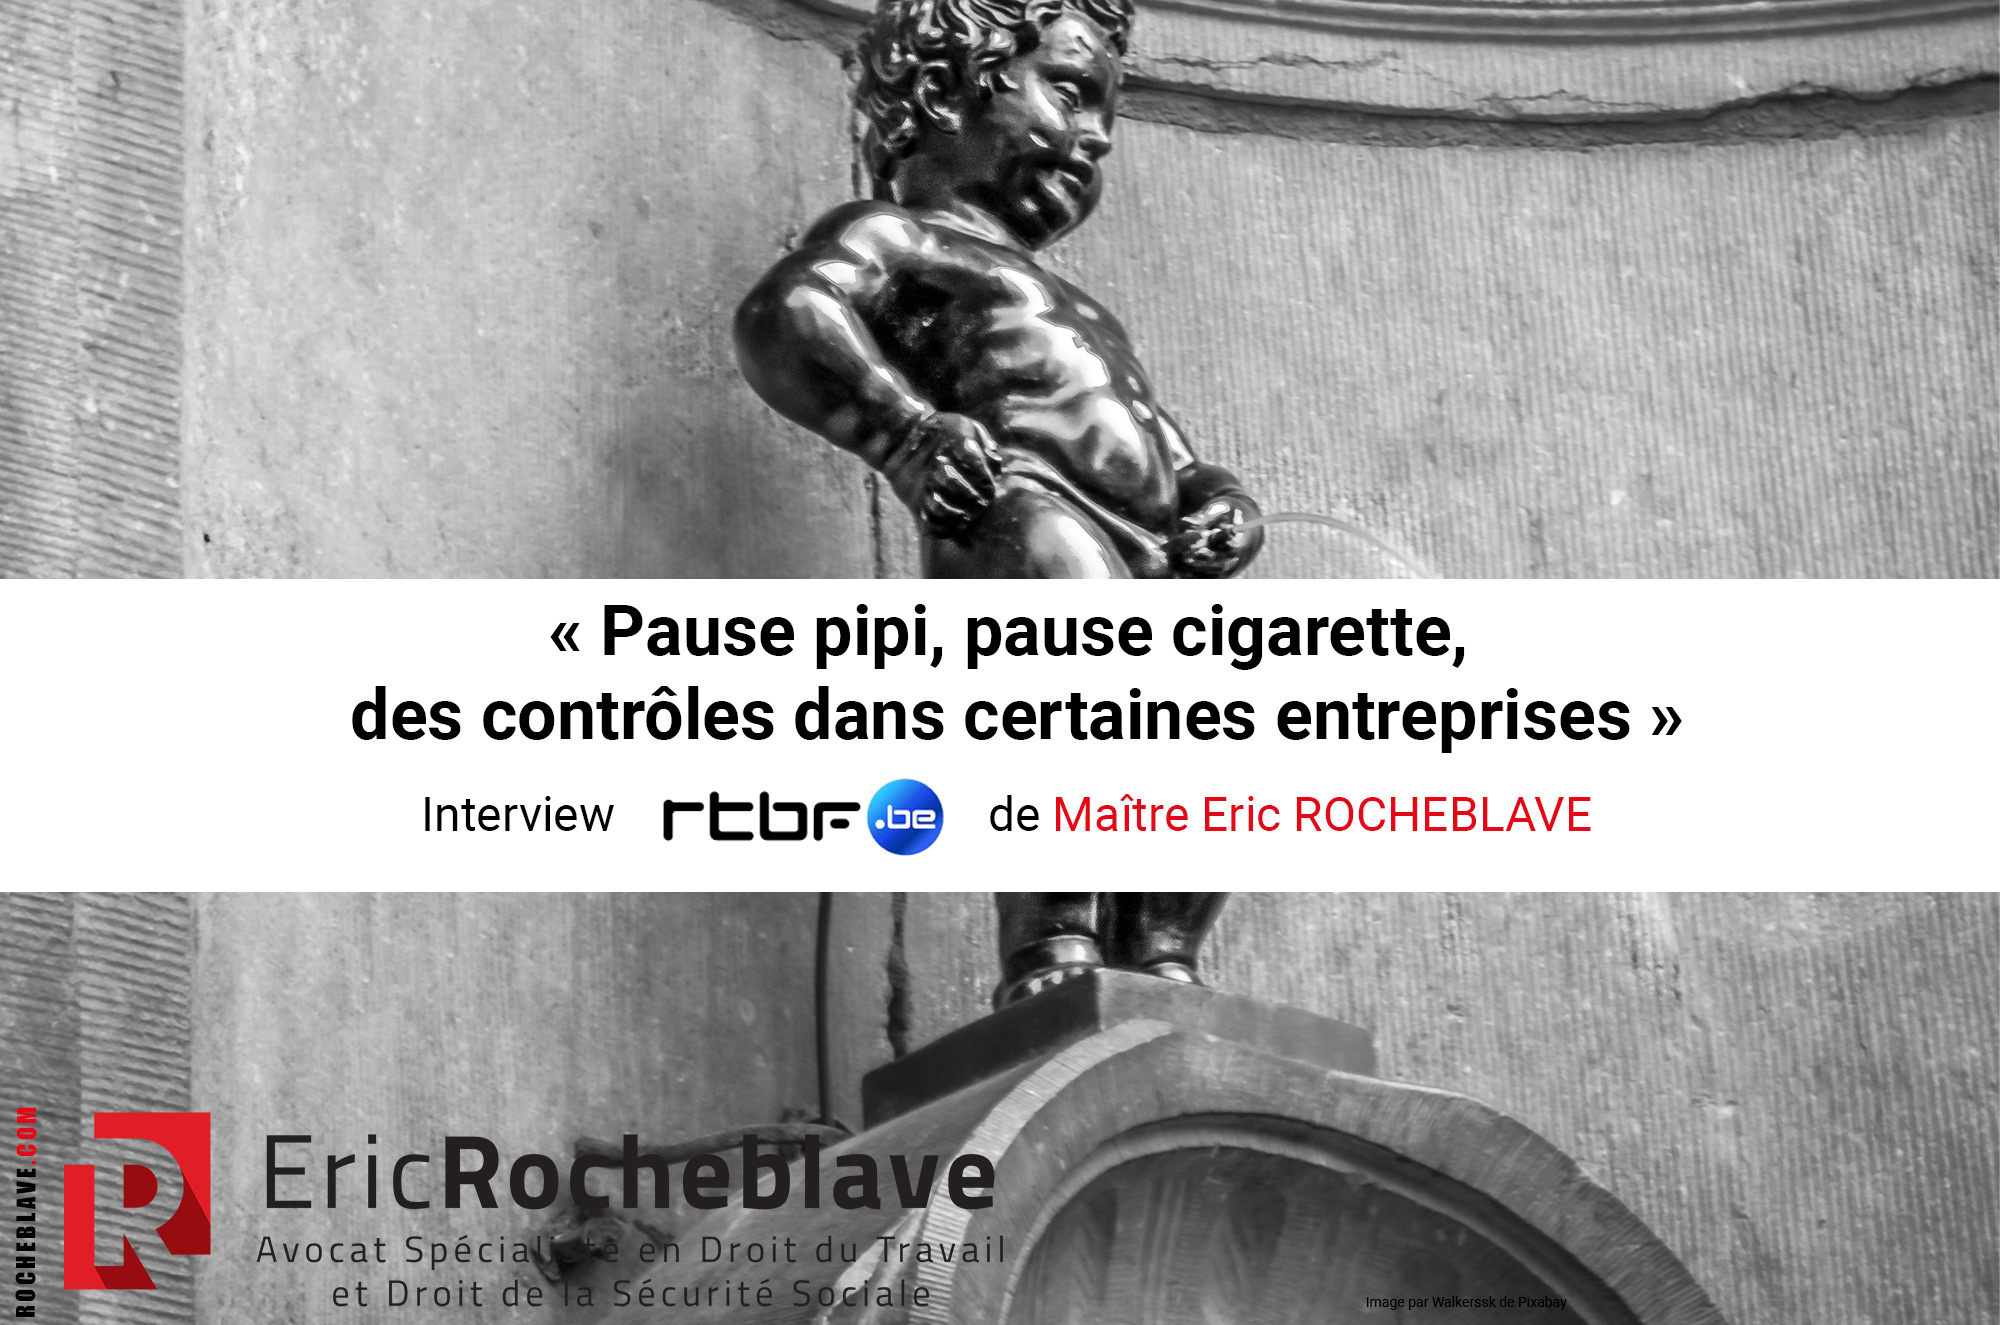 « Pause pipi, pause cigarette, des contrôles dans certaines entreprises » ​Interview rtbf de Maître Eric ROCHEBLAVE